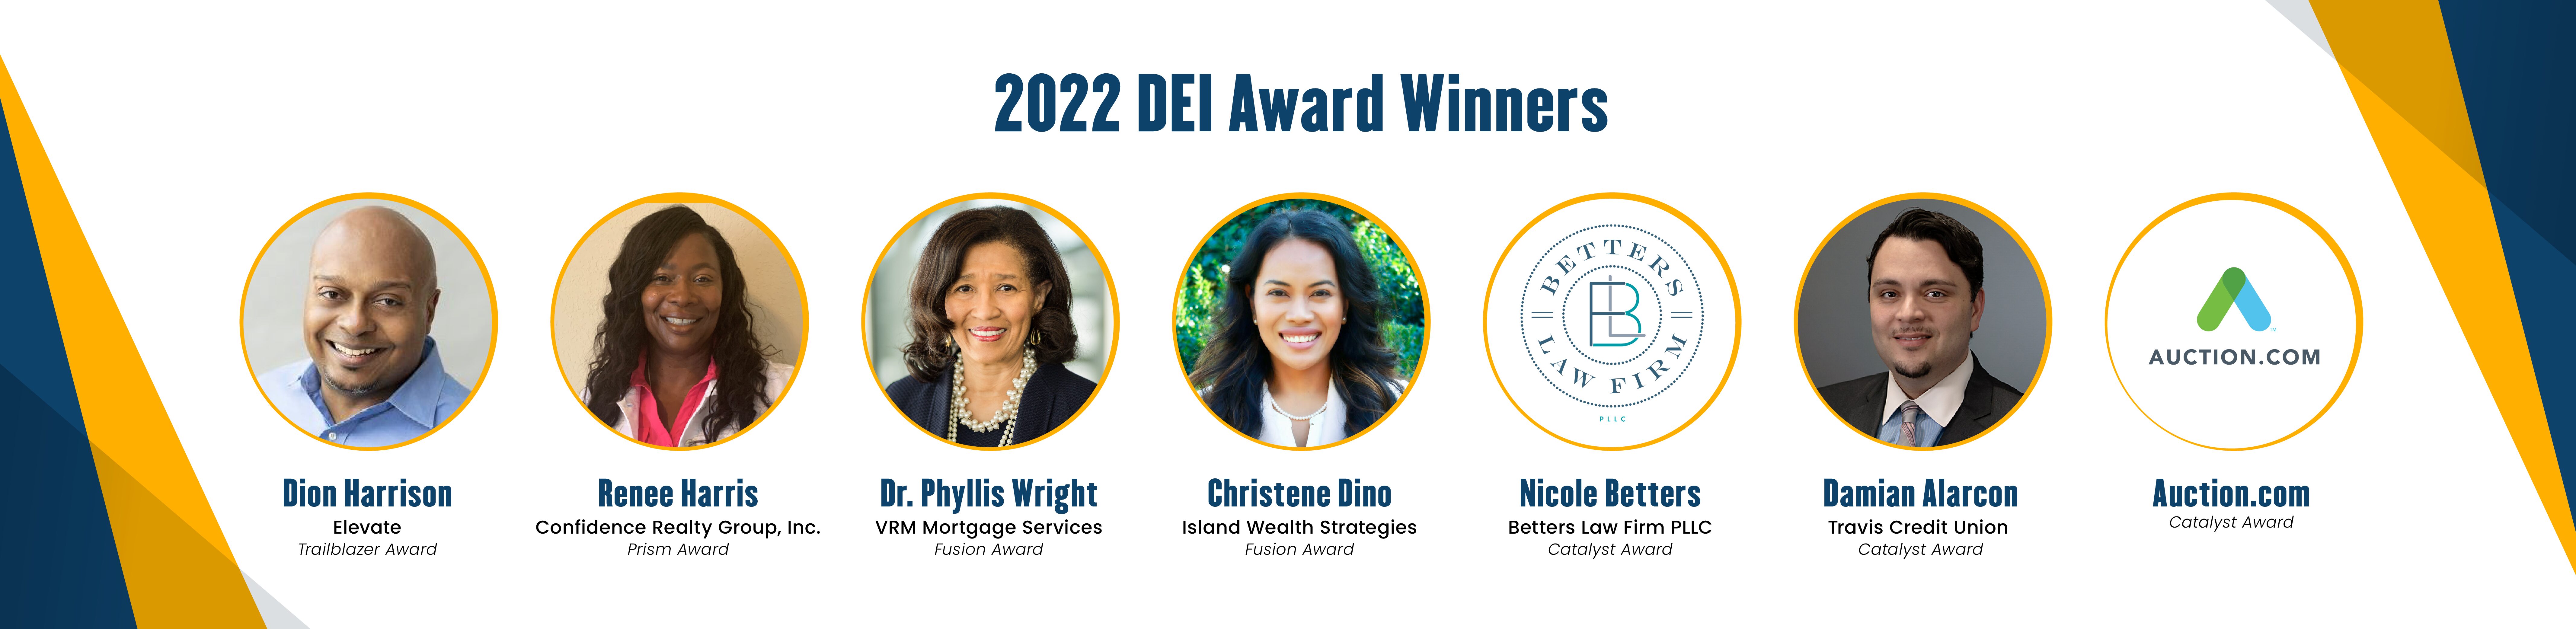 2022 CIFS DEI Award Winners